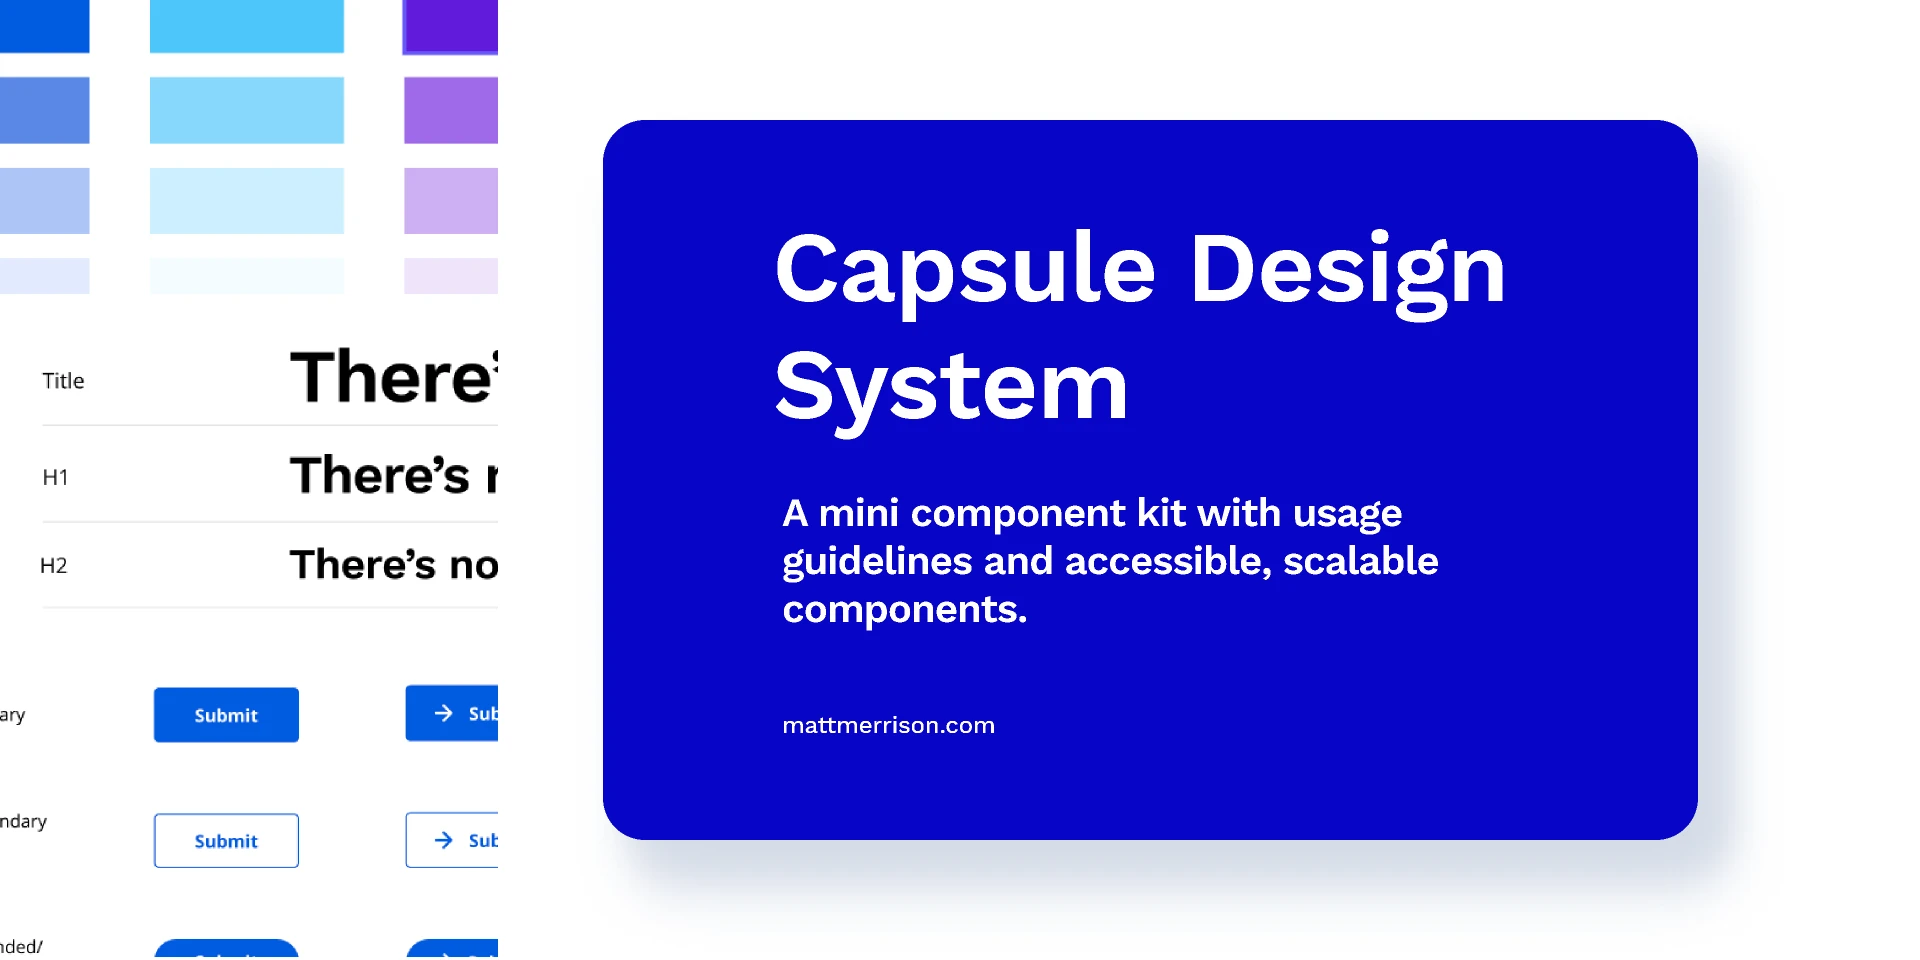 Capsule Design System v1.0 for Figma and Adobe XD